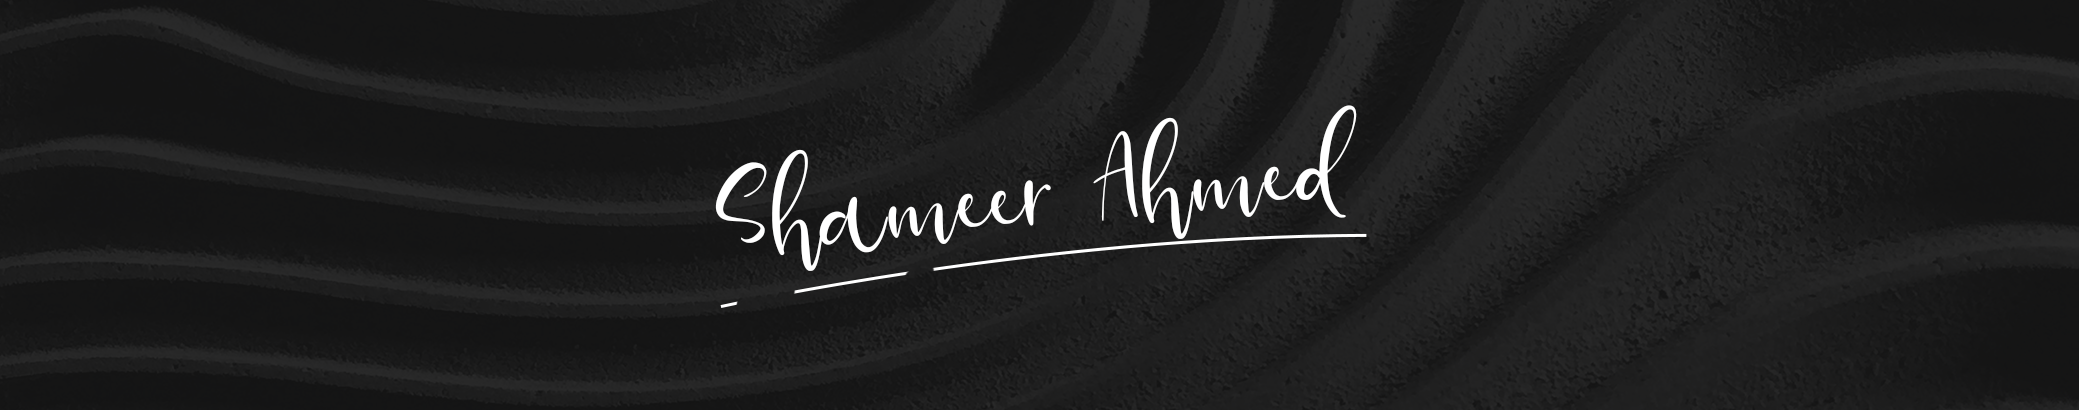 Shameer Ahmed's profile banner